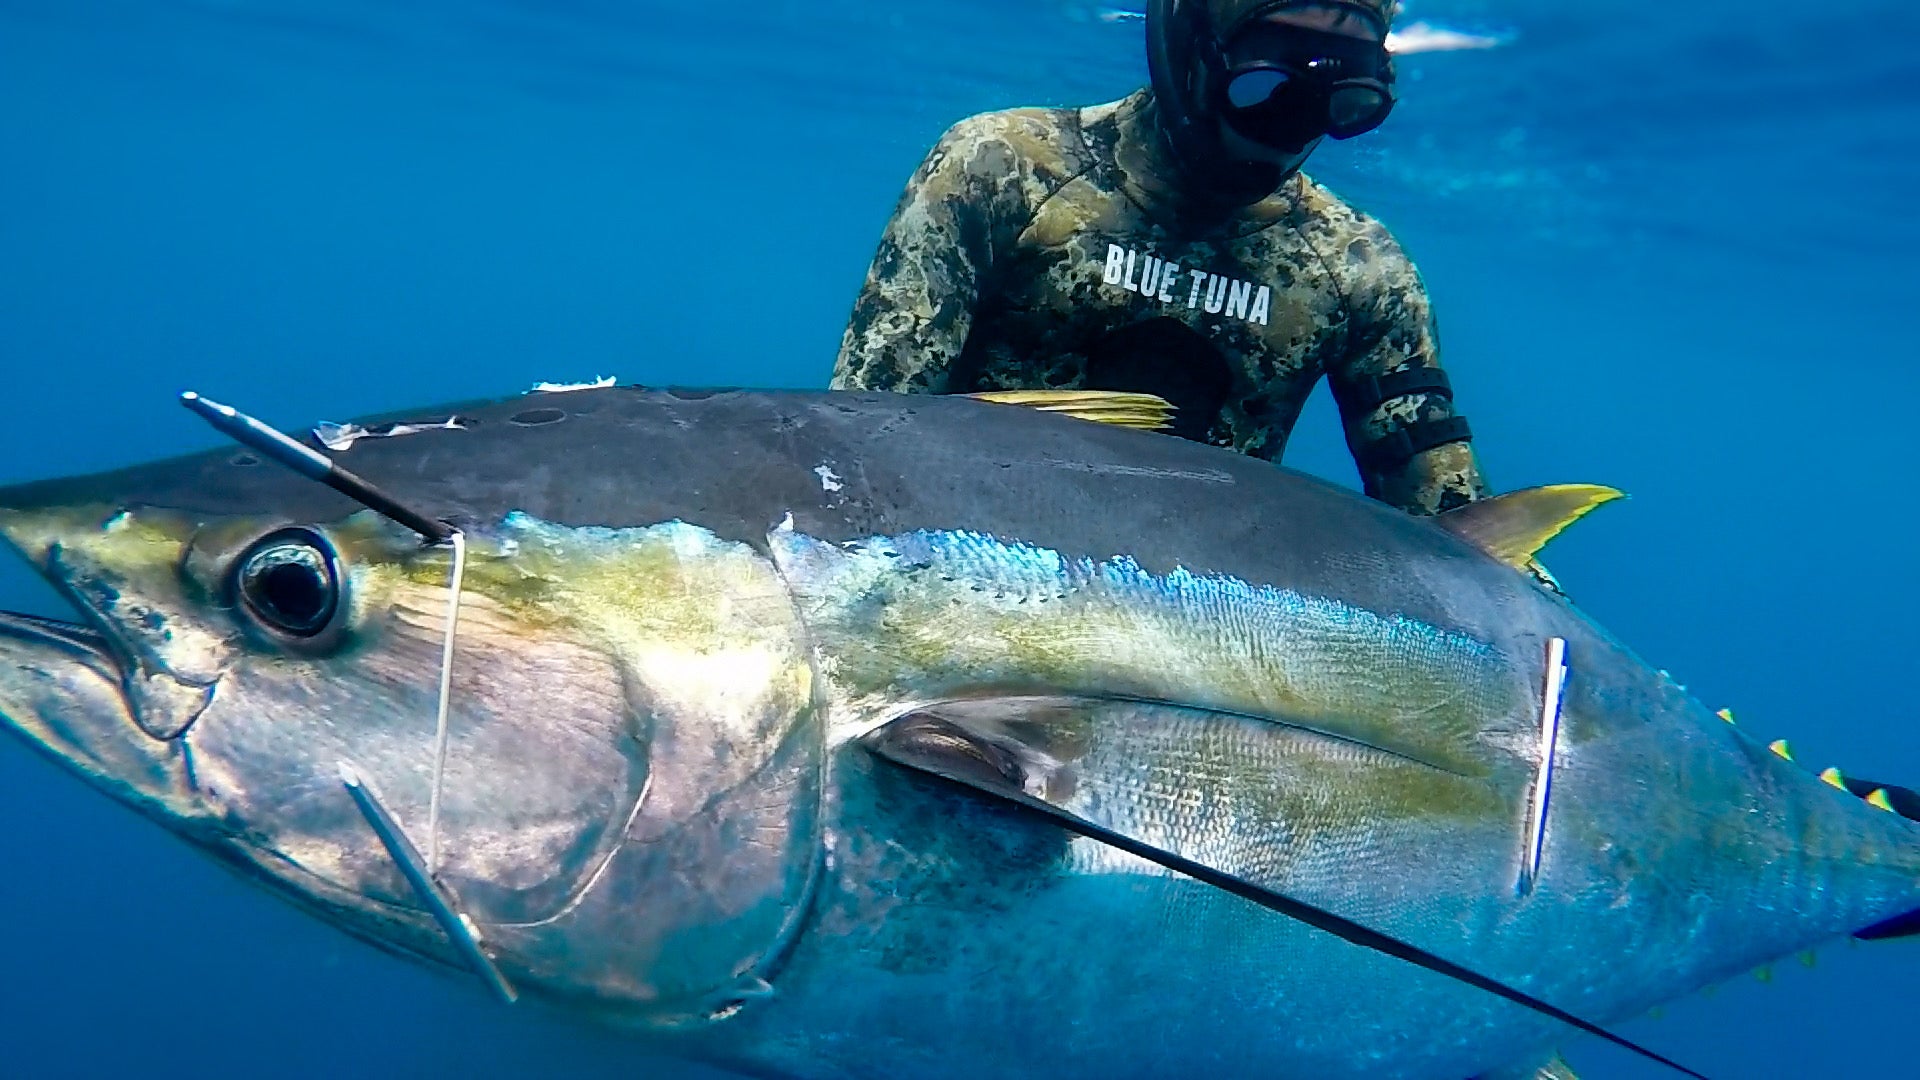 Spearheads – Blue Tuna Spearfishing Co